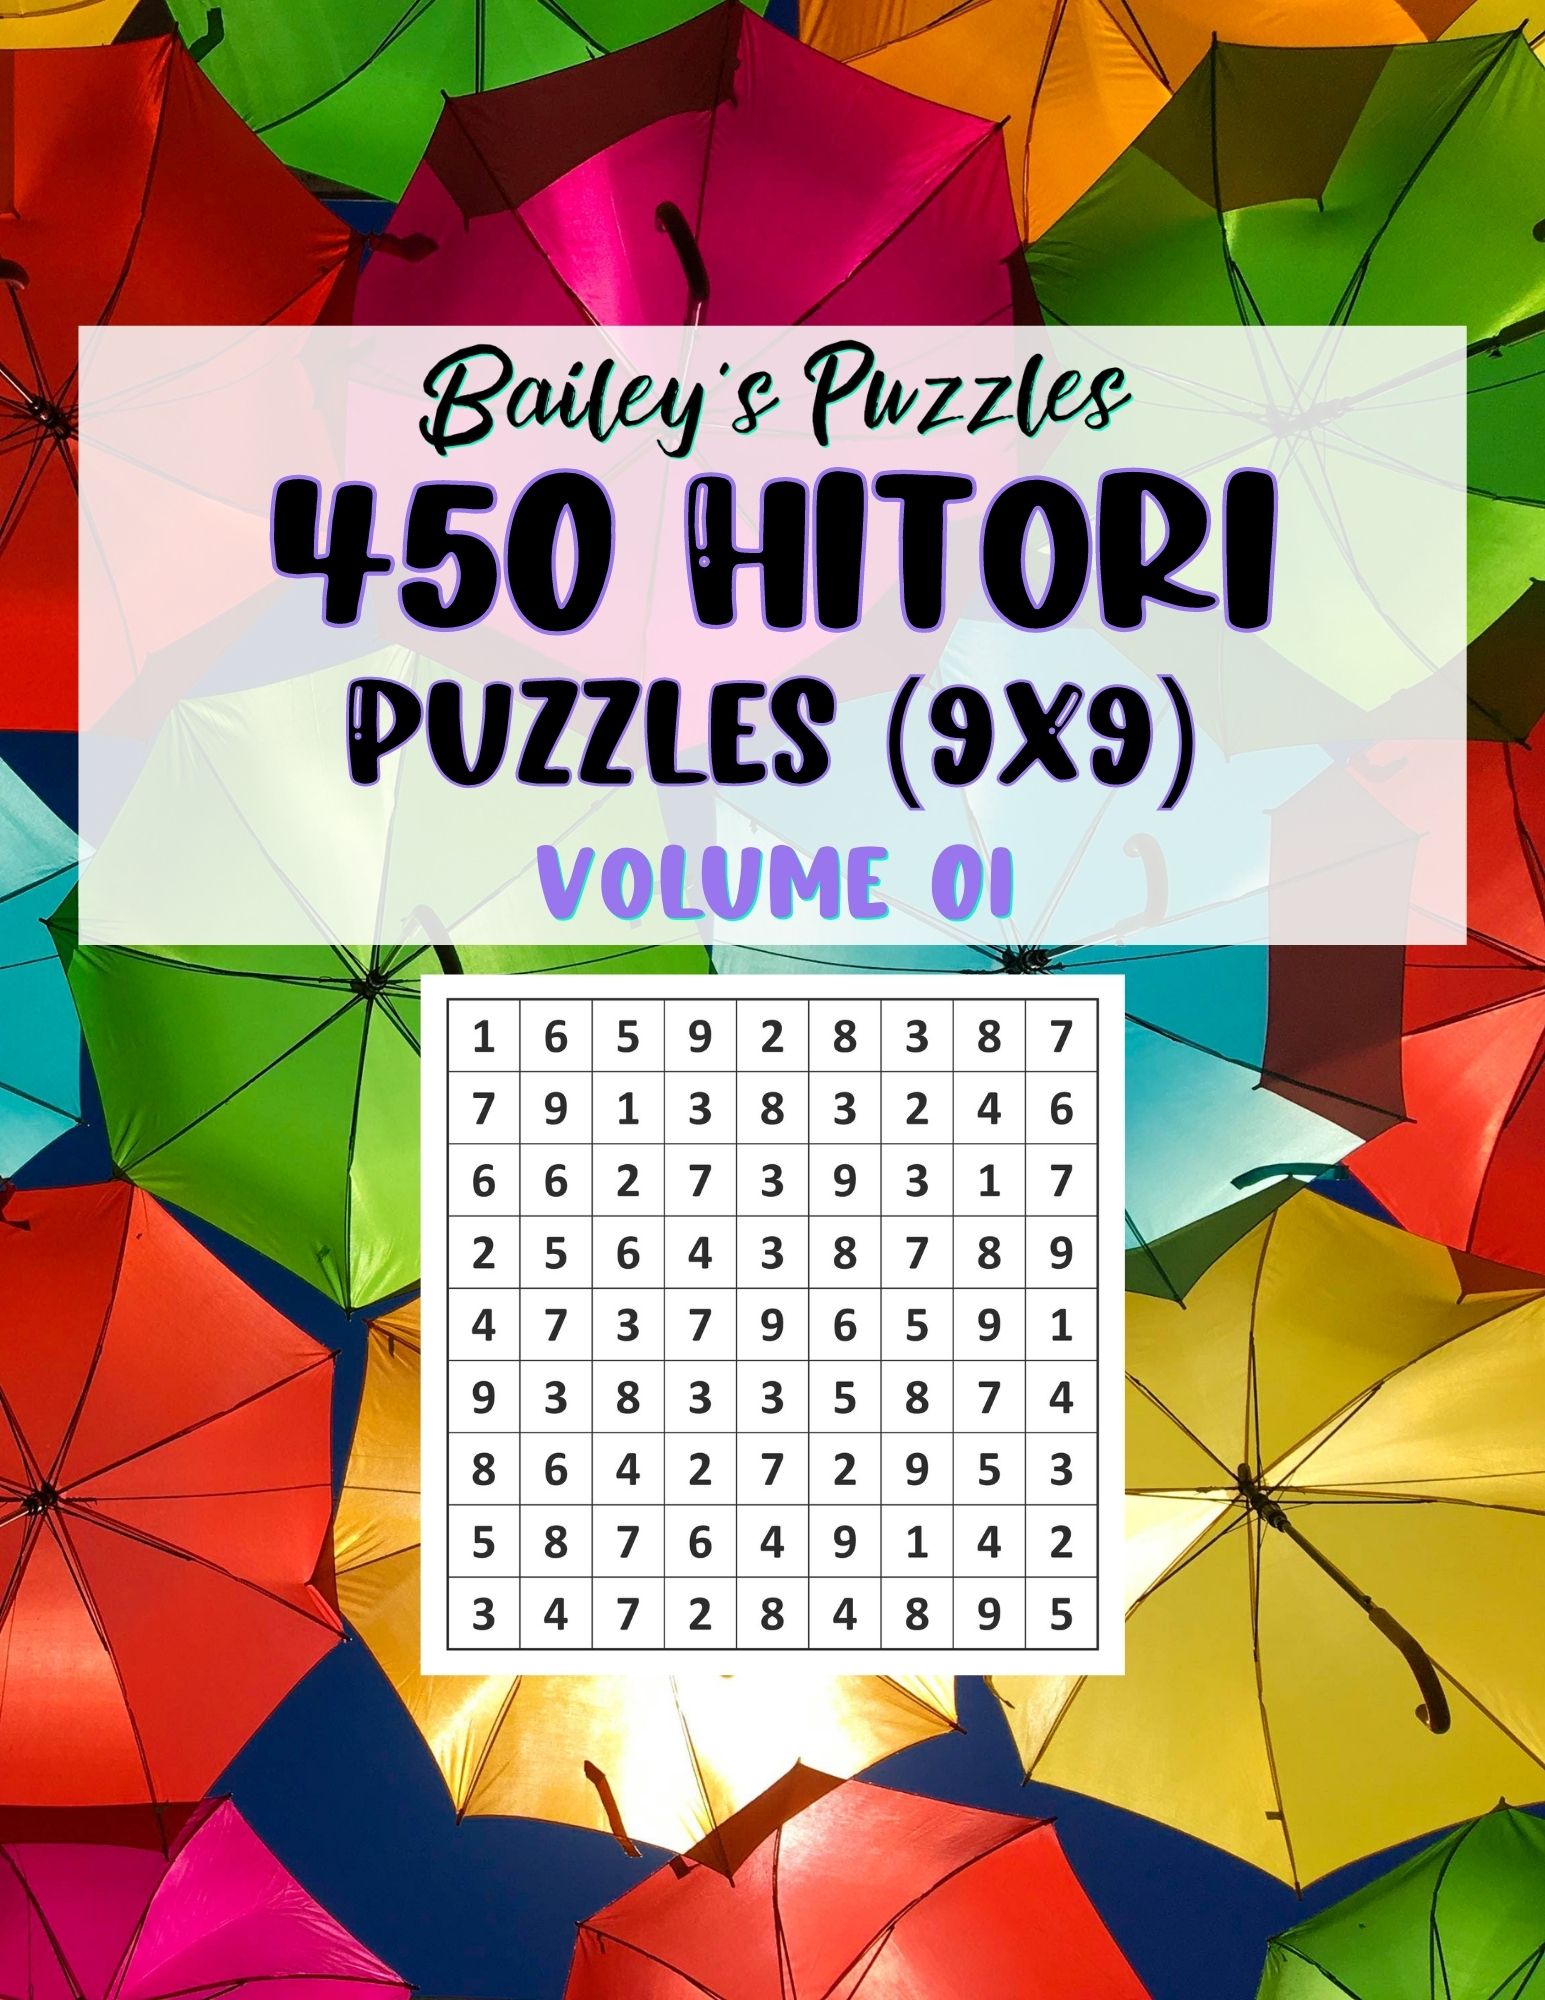 Buy Now: 450 Hitori Puzzles 9x9